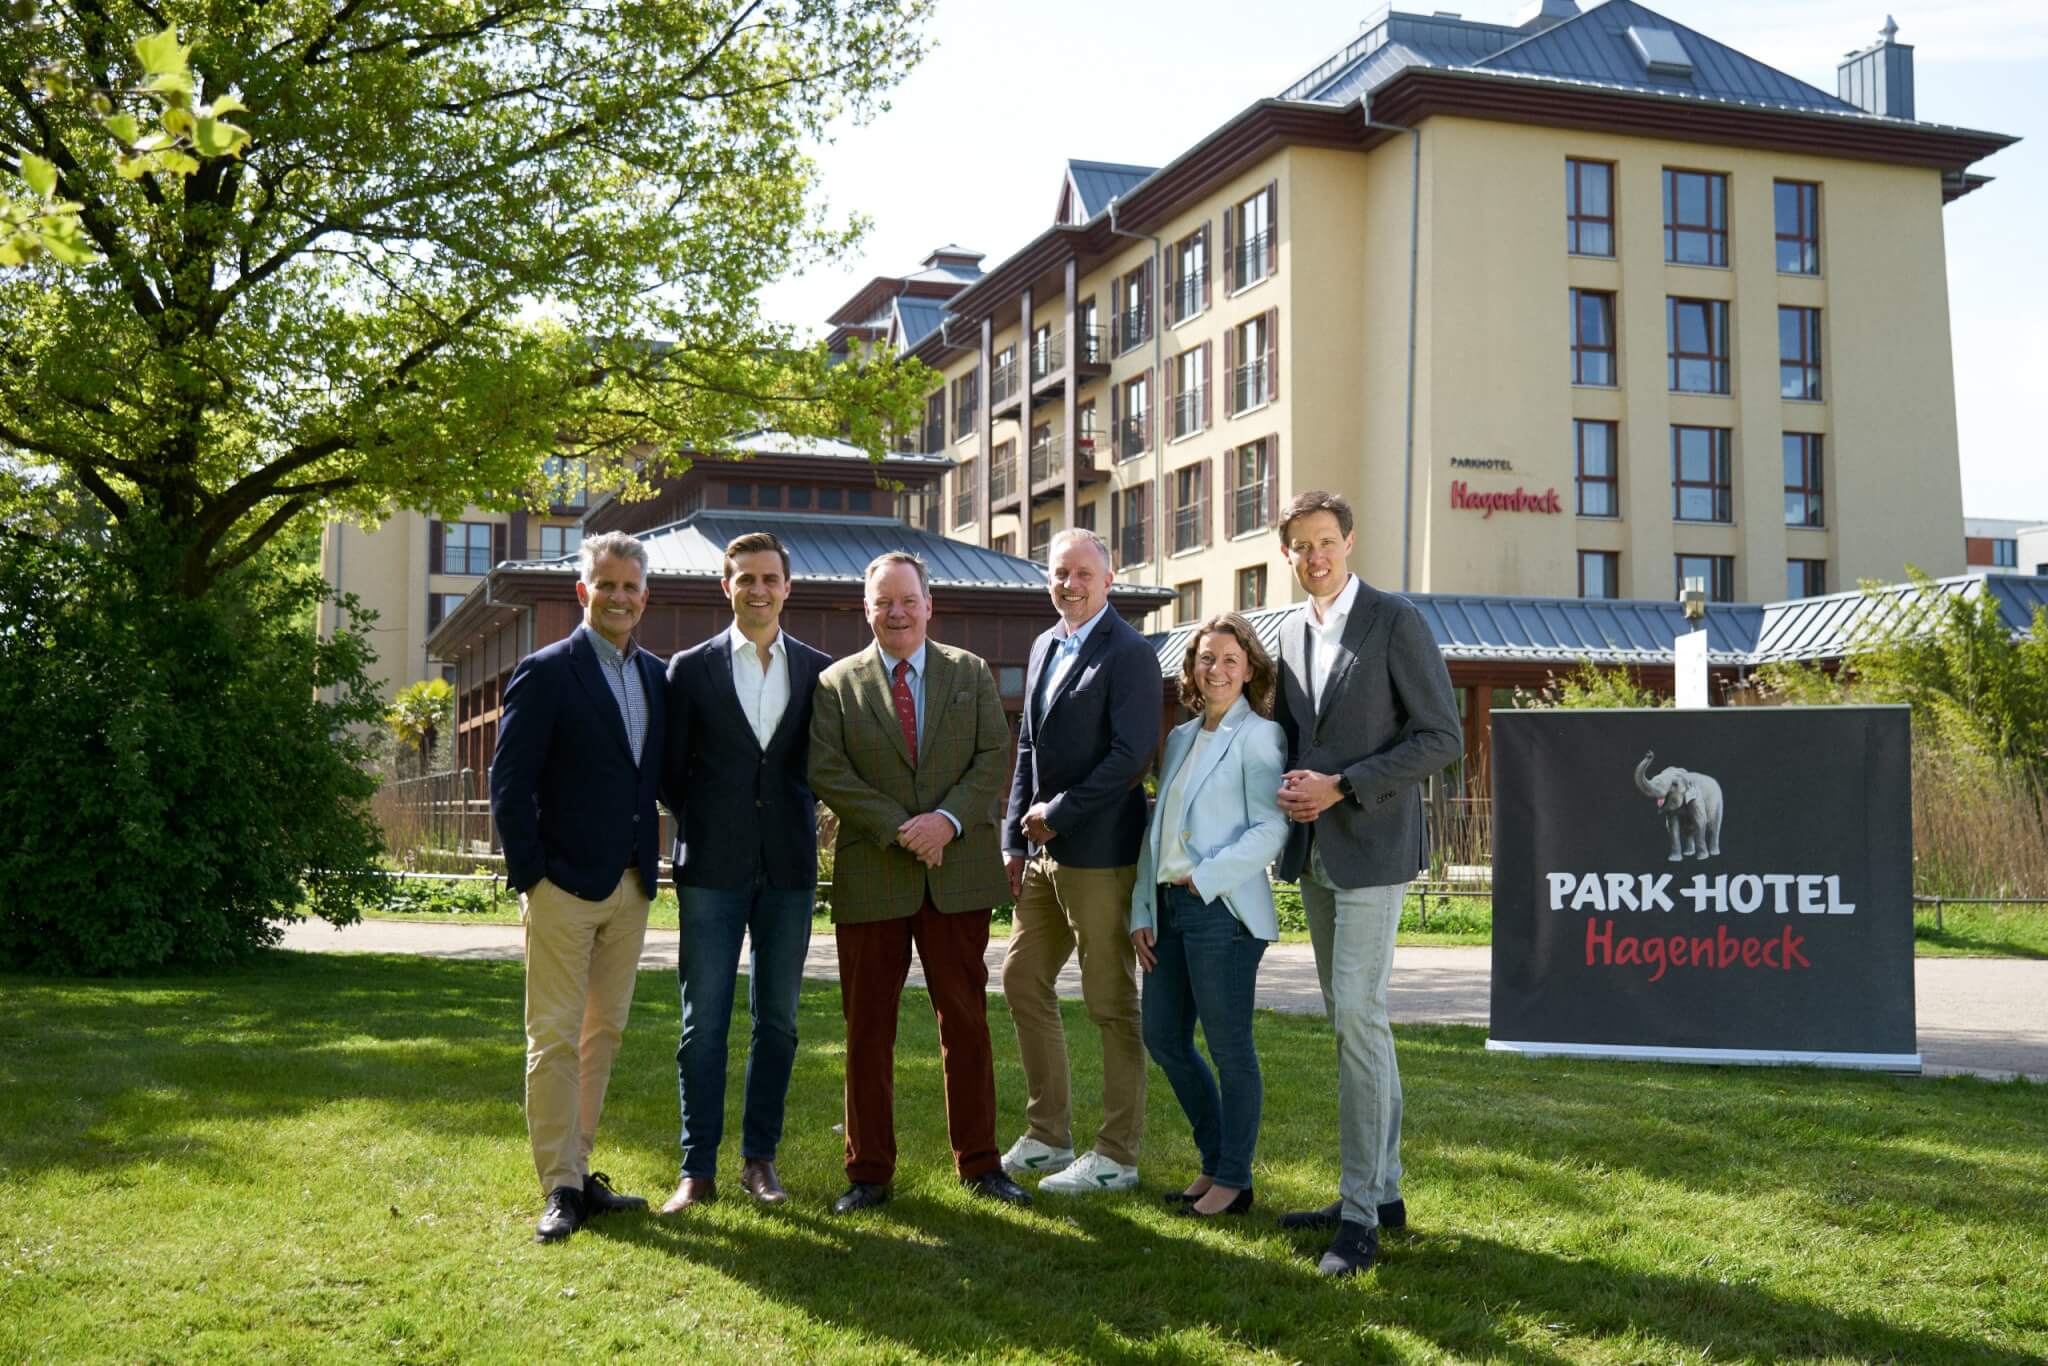 Park-Hotel Hagenbeck geht neue Wege